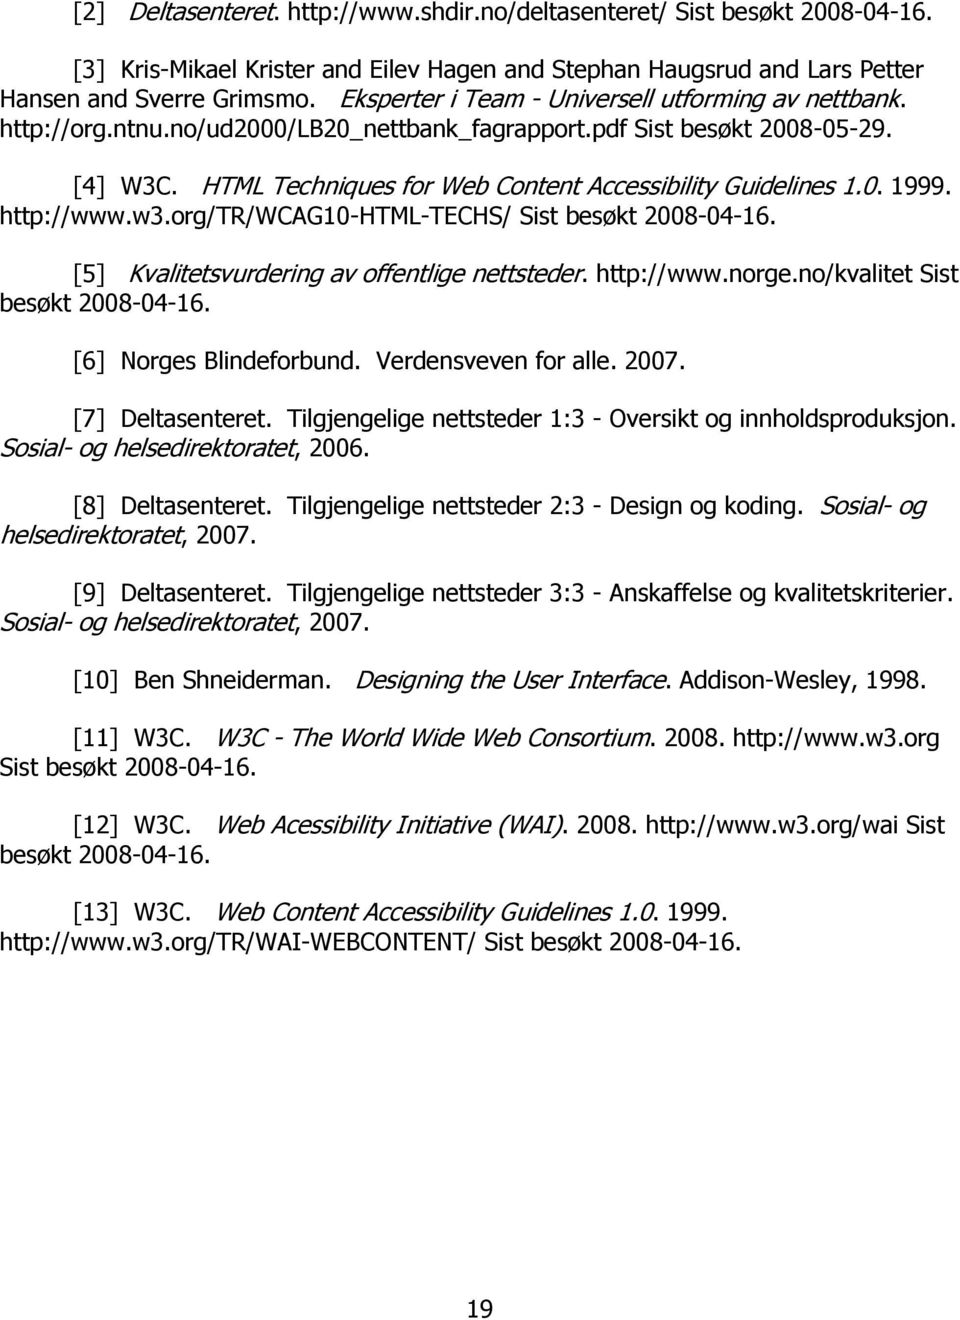 0. 1999. http://www.w3.org/tr/wcag10-html-techs/ Sist besøkt 2008-04-16. [5] Kvalitetsvurdering av offentlige nettsteder. http://www.norge.no/kvalitet Sist besøkt 2008-04-16. [6] Norges Blindeforbund.